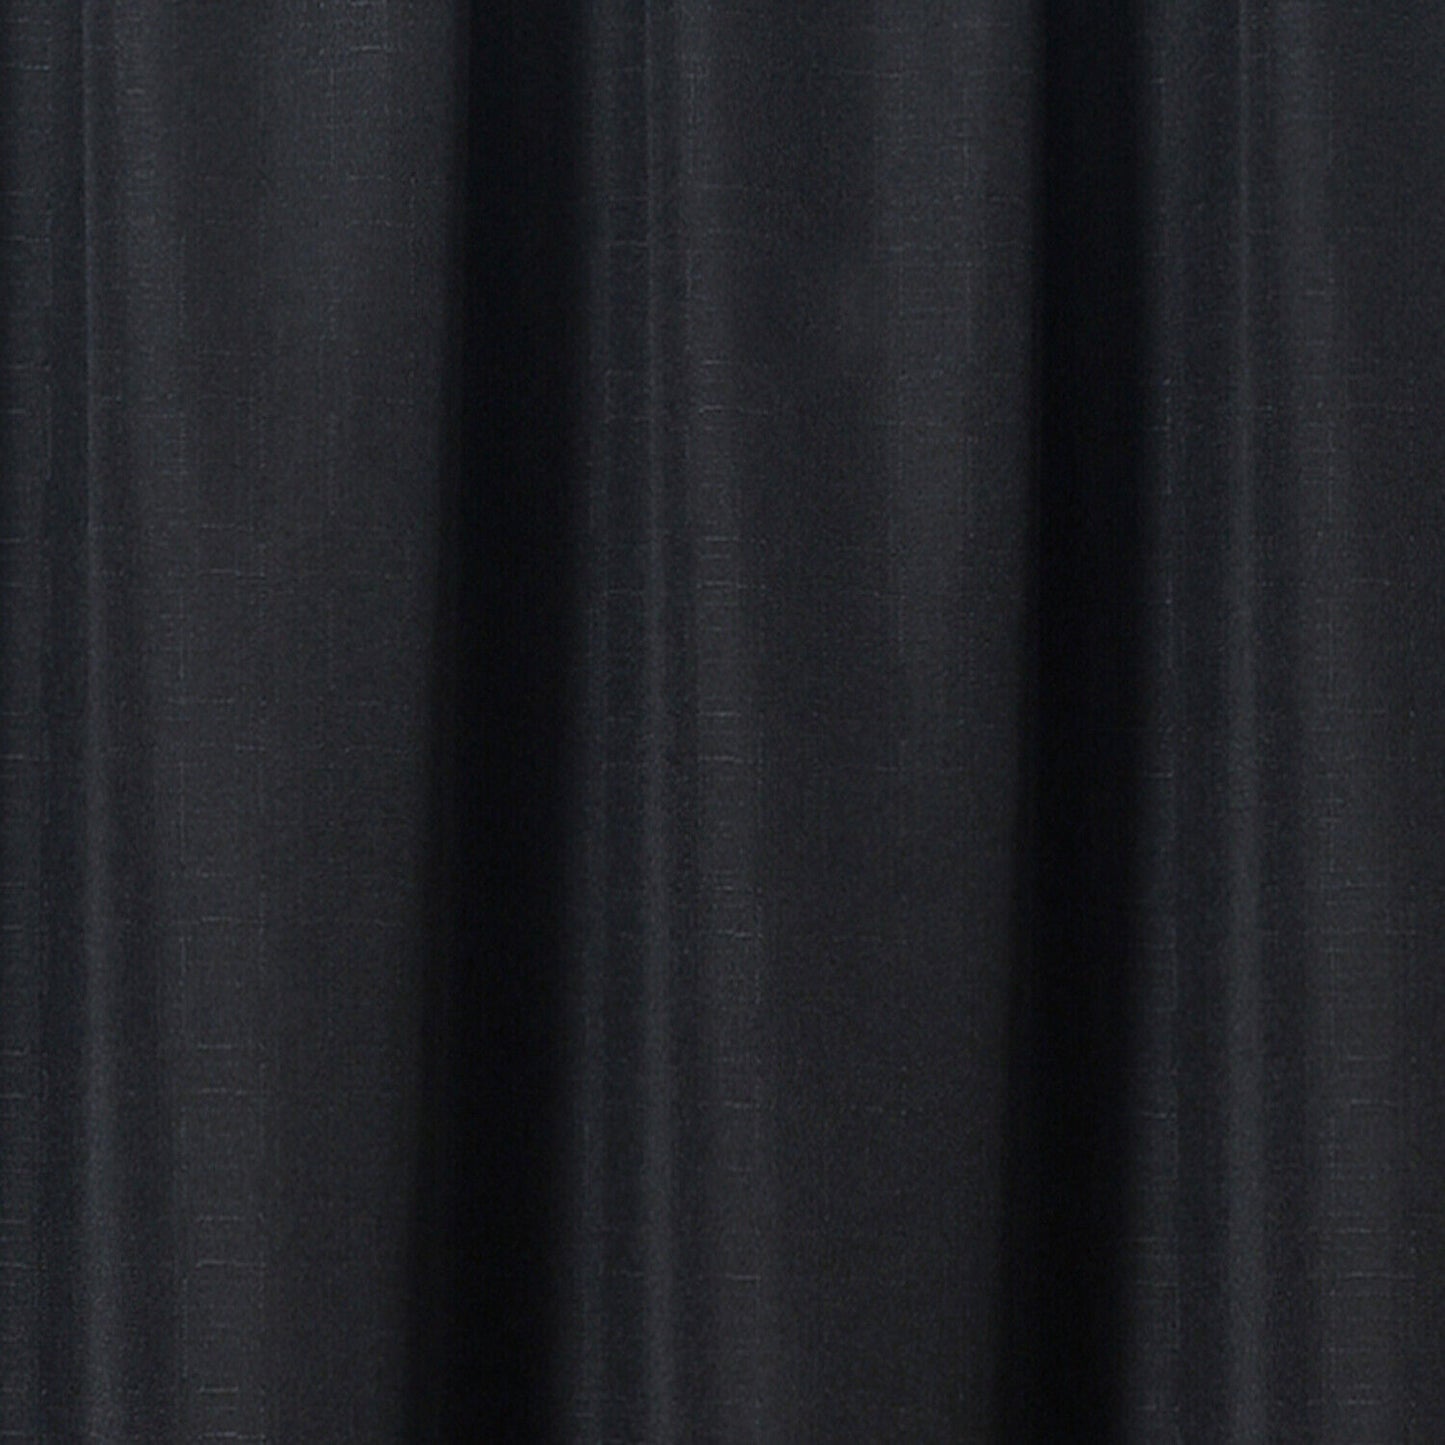 Linen Look Voile 59" x 54" Black Window Curtain Drapes Textured Plain Slot Top